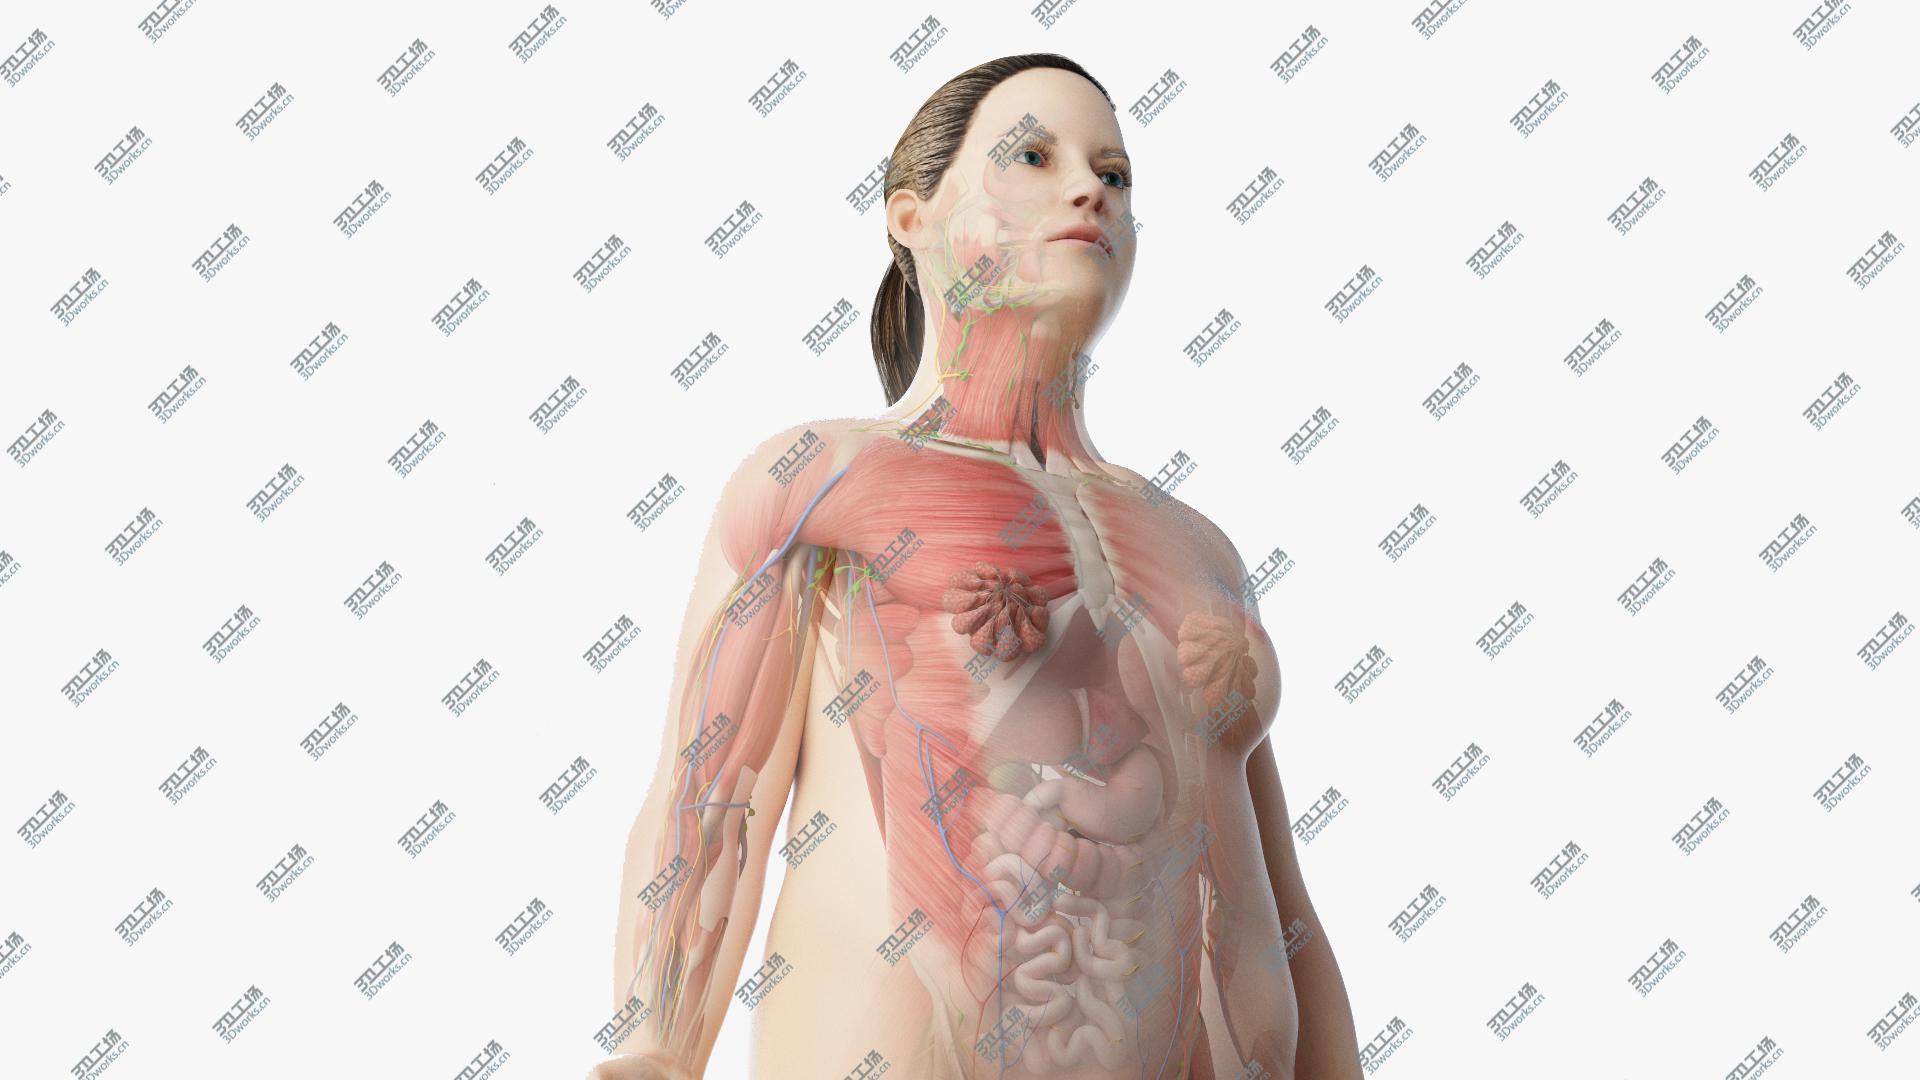 images/goods_img/20210313/3D model Full Obese Female Anatomy/1.jpg